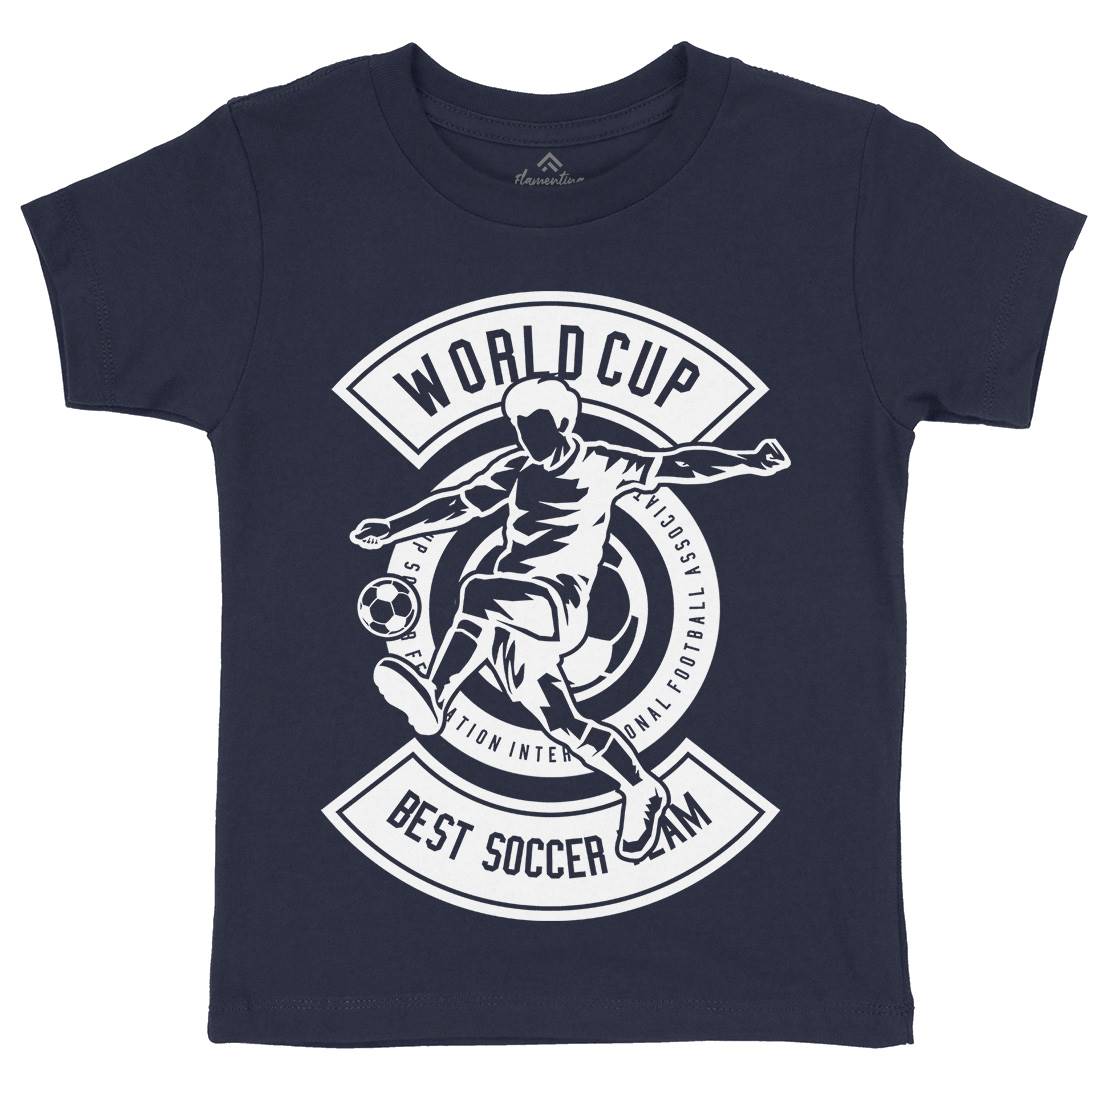 World Cup Soccer Kids Crew Neck T-Shirt Sport B675